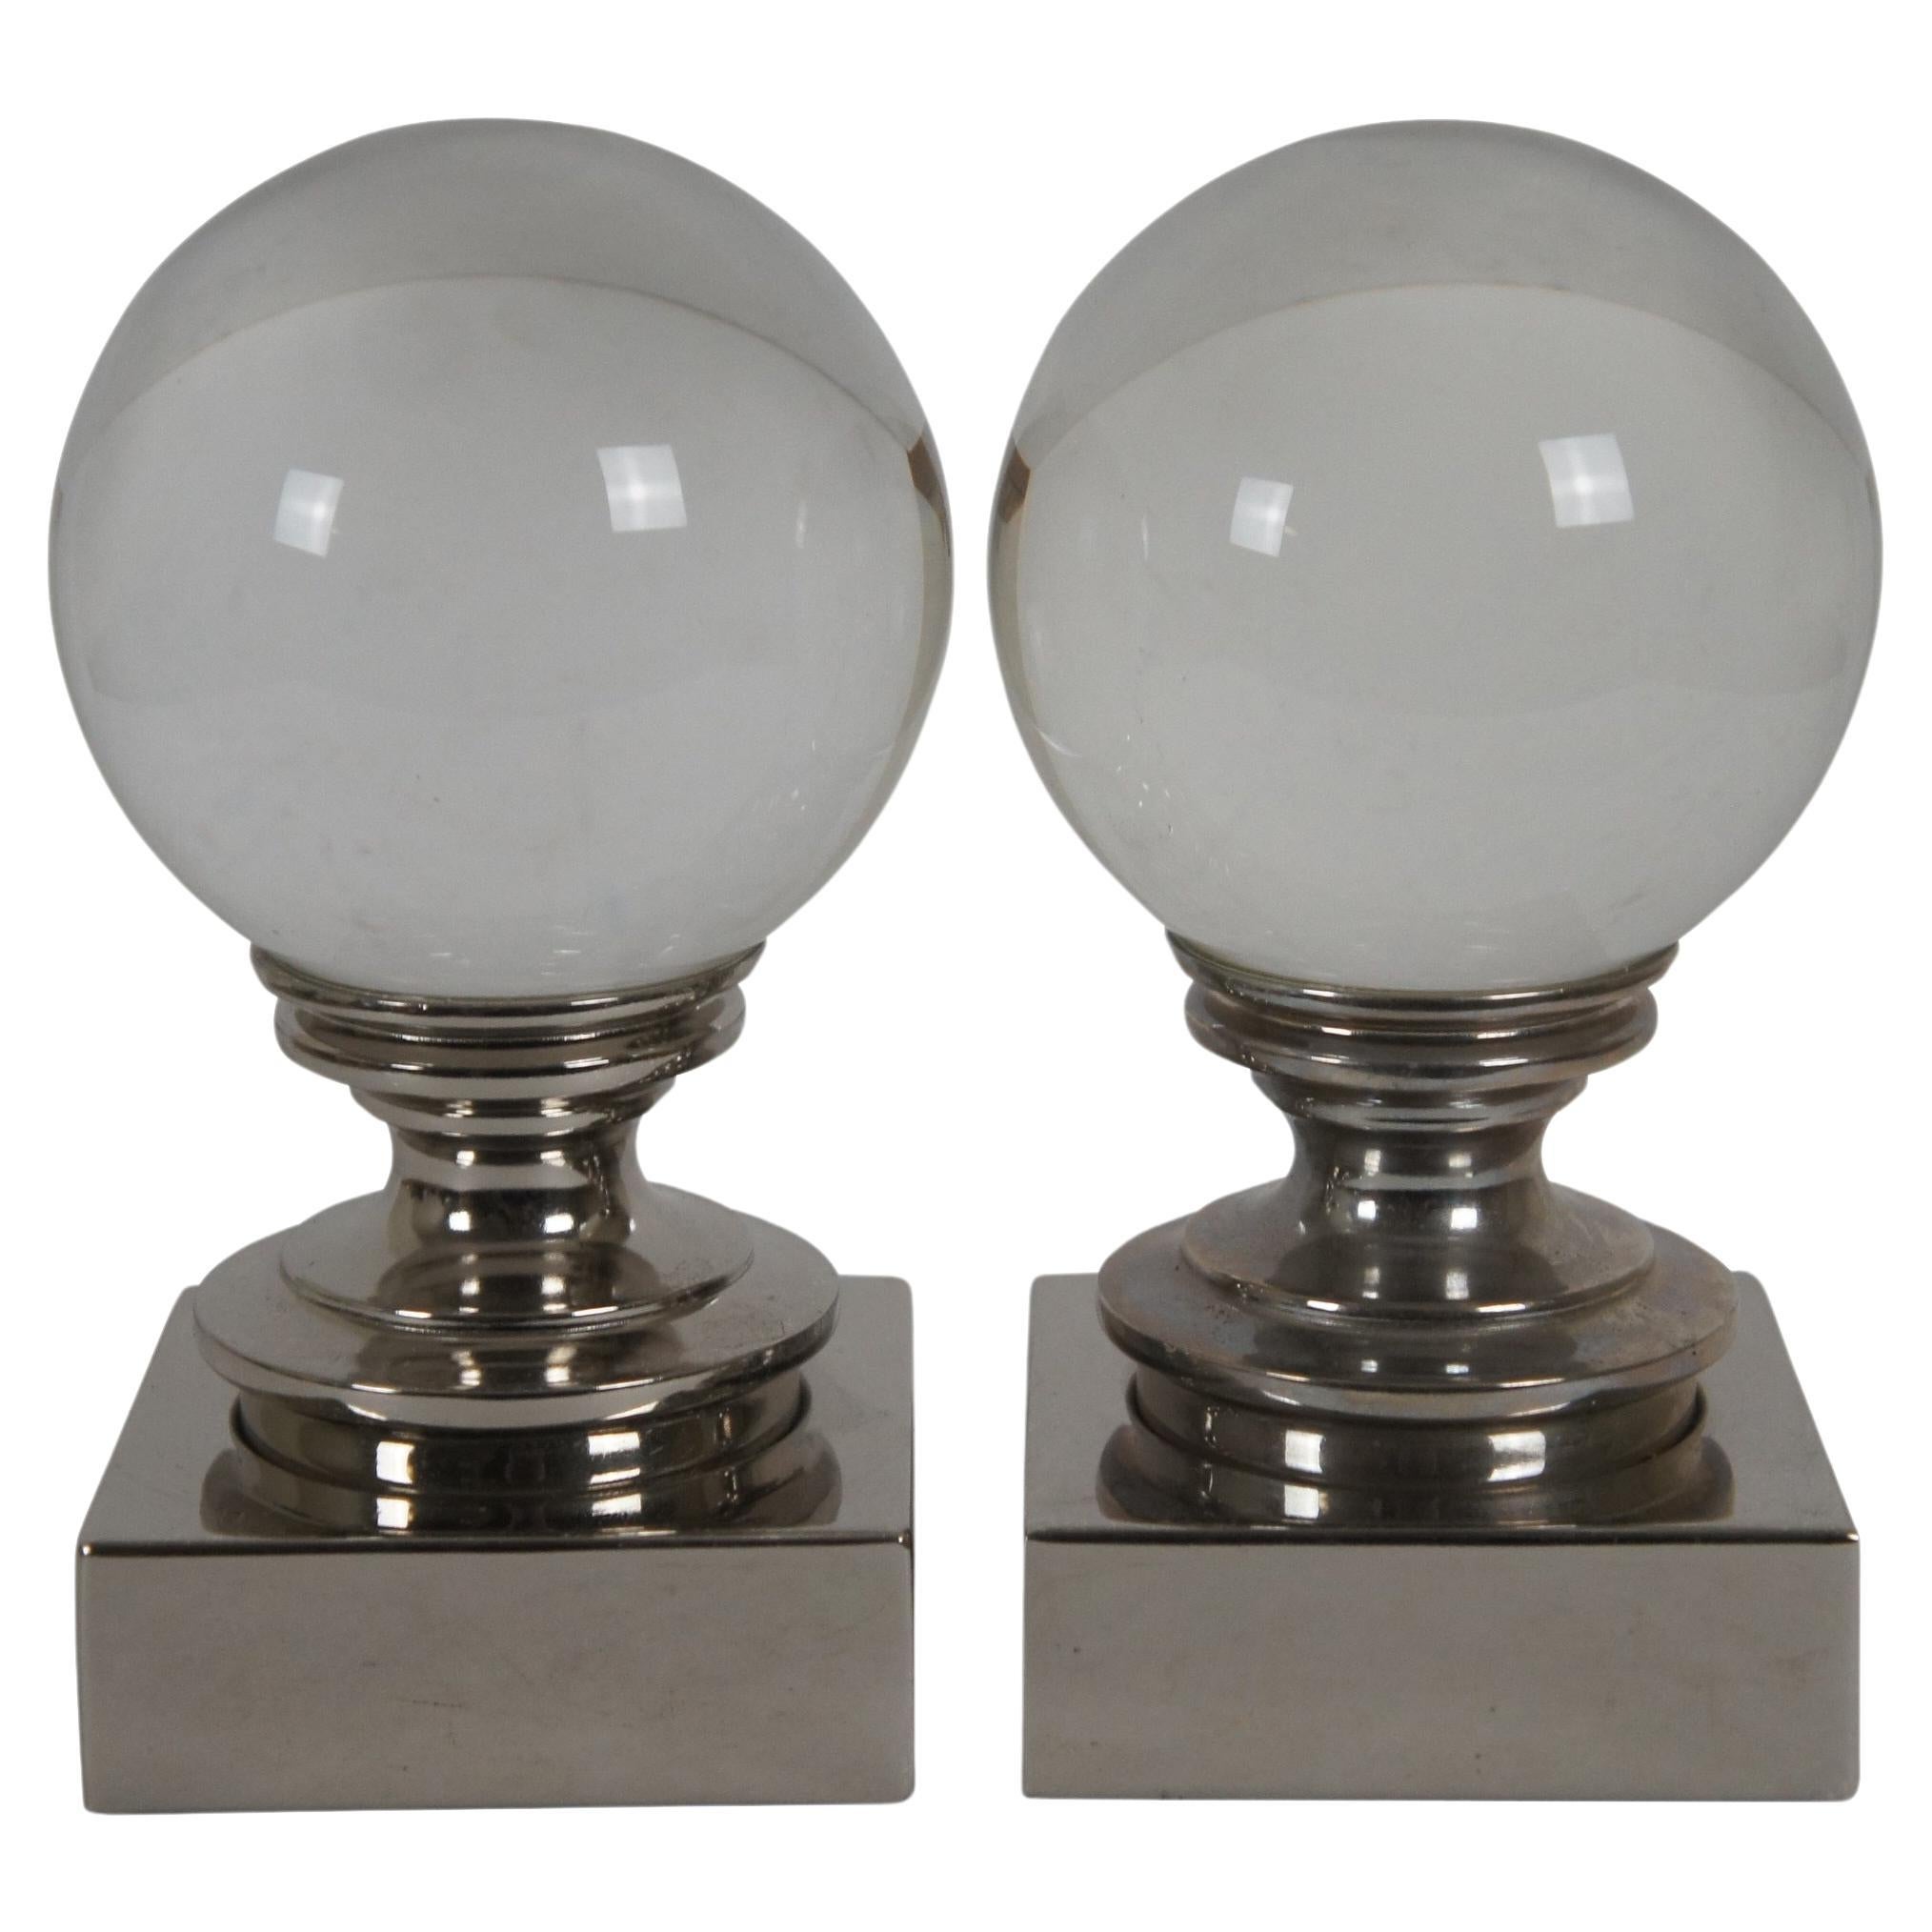 2 Vintage Restoration Hardware Crystal Ball Bookends on Chrome Pedestal 7"